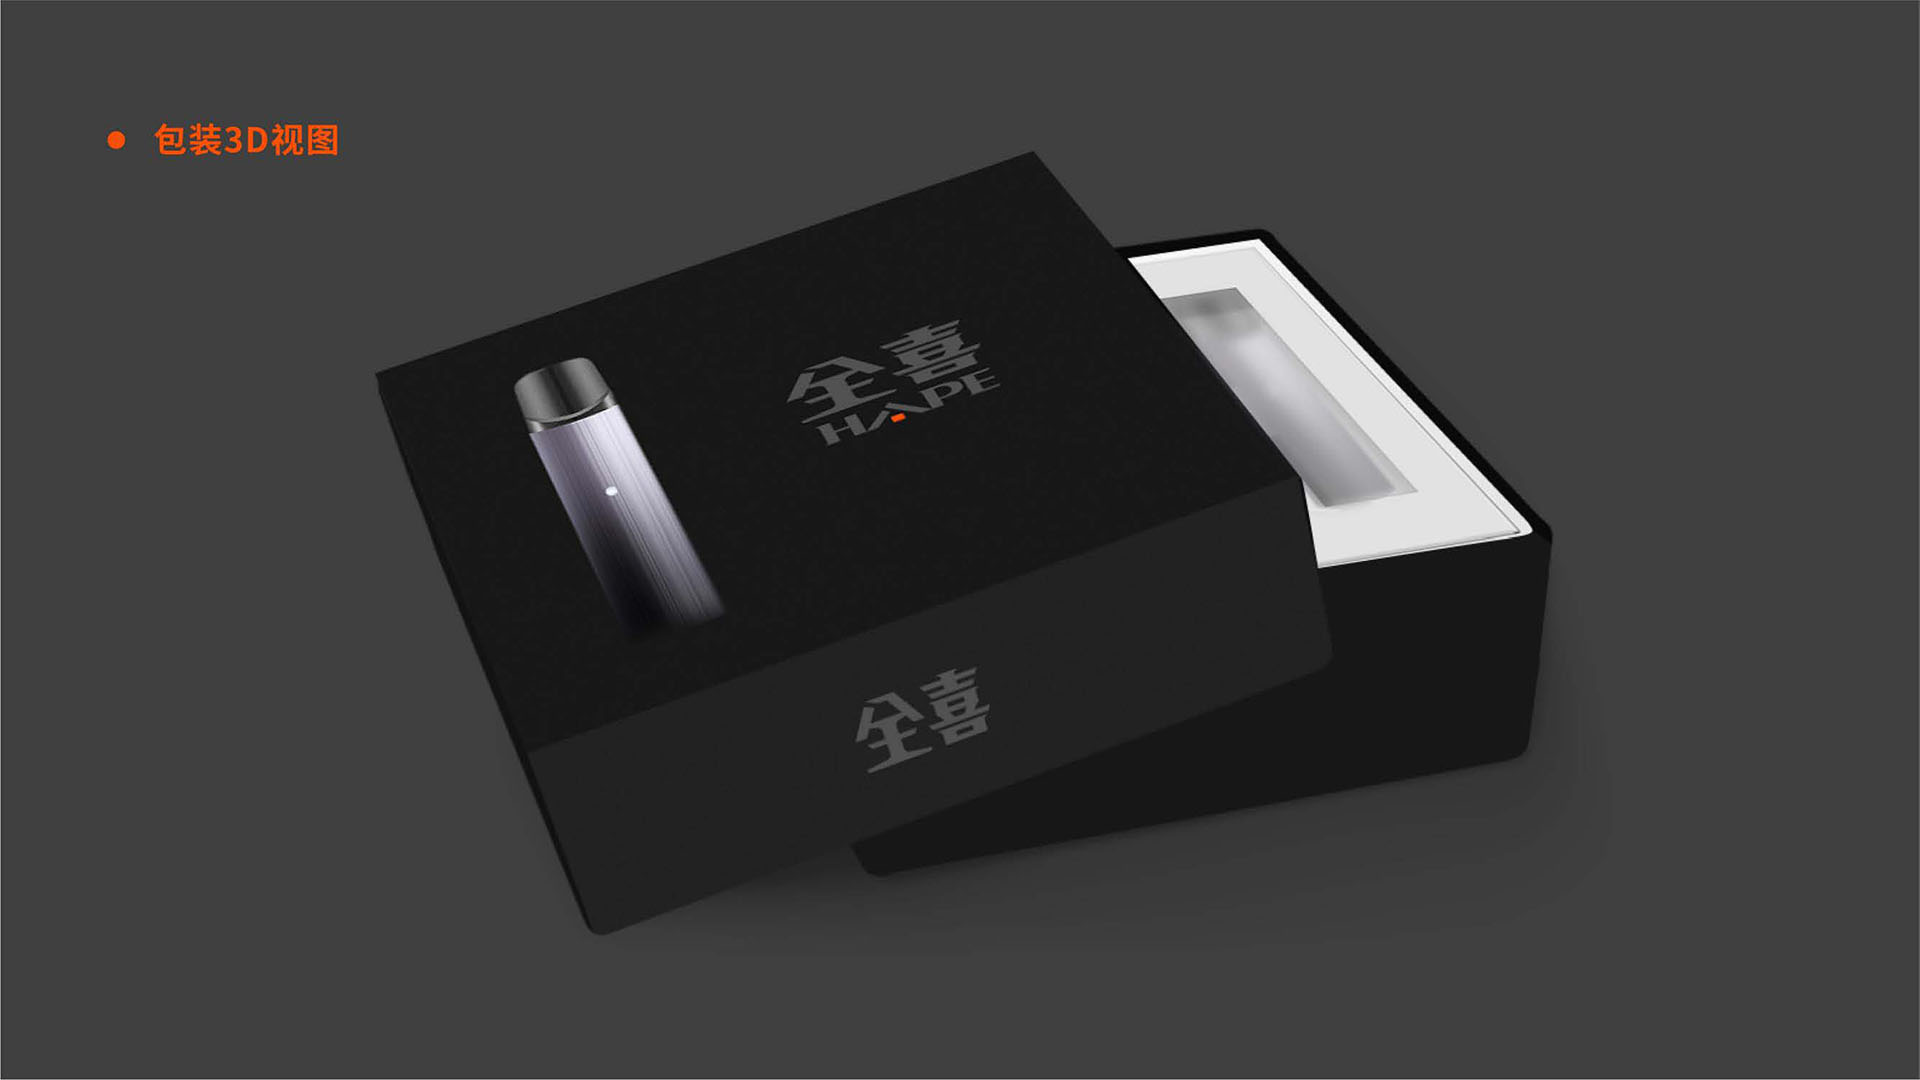 高端电子烟包装盒设计-深圳（全喜HAPE）